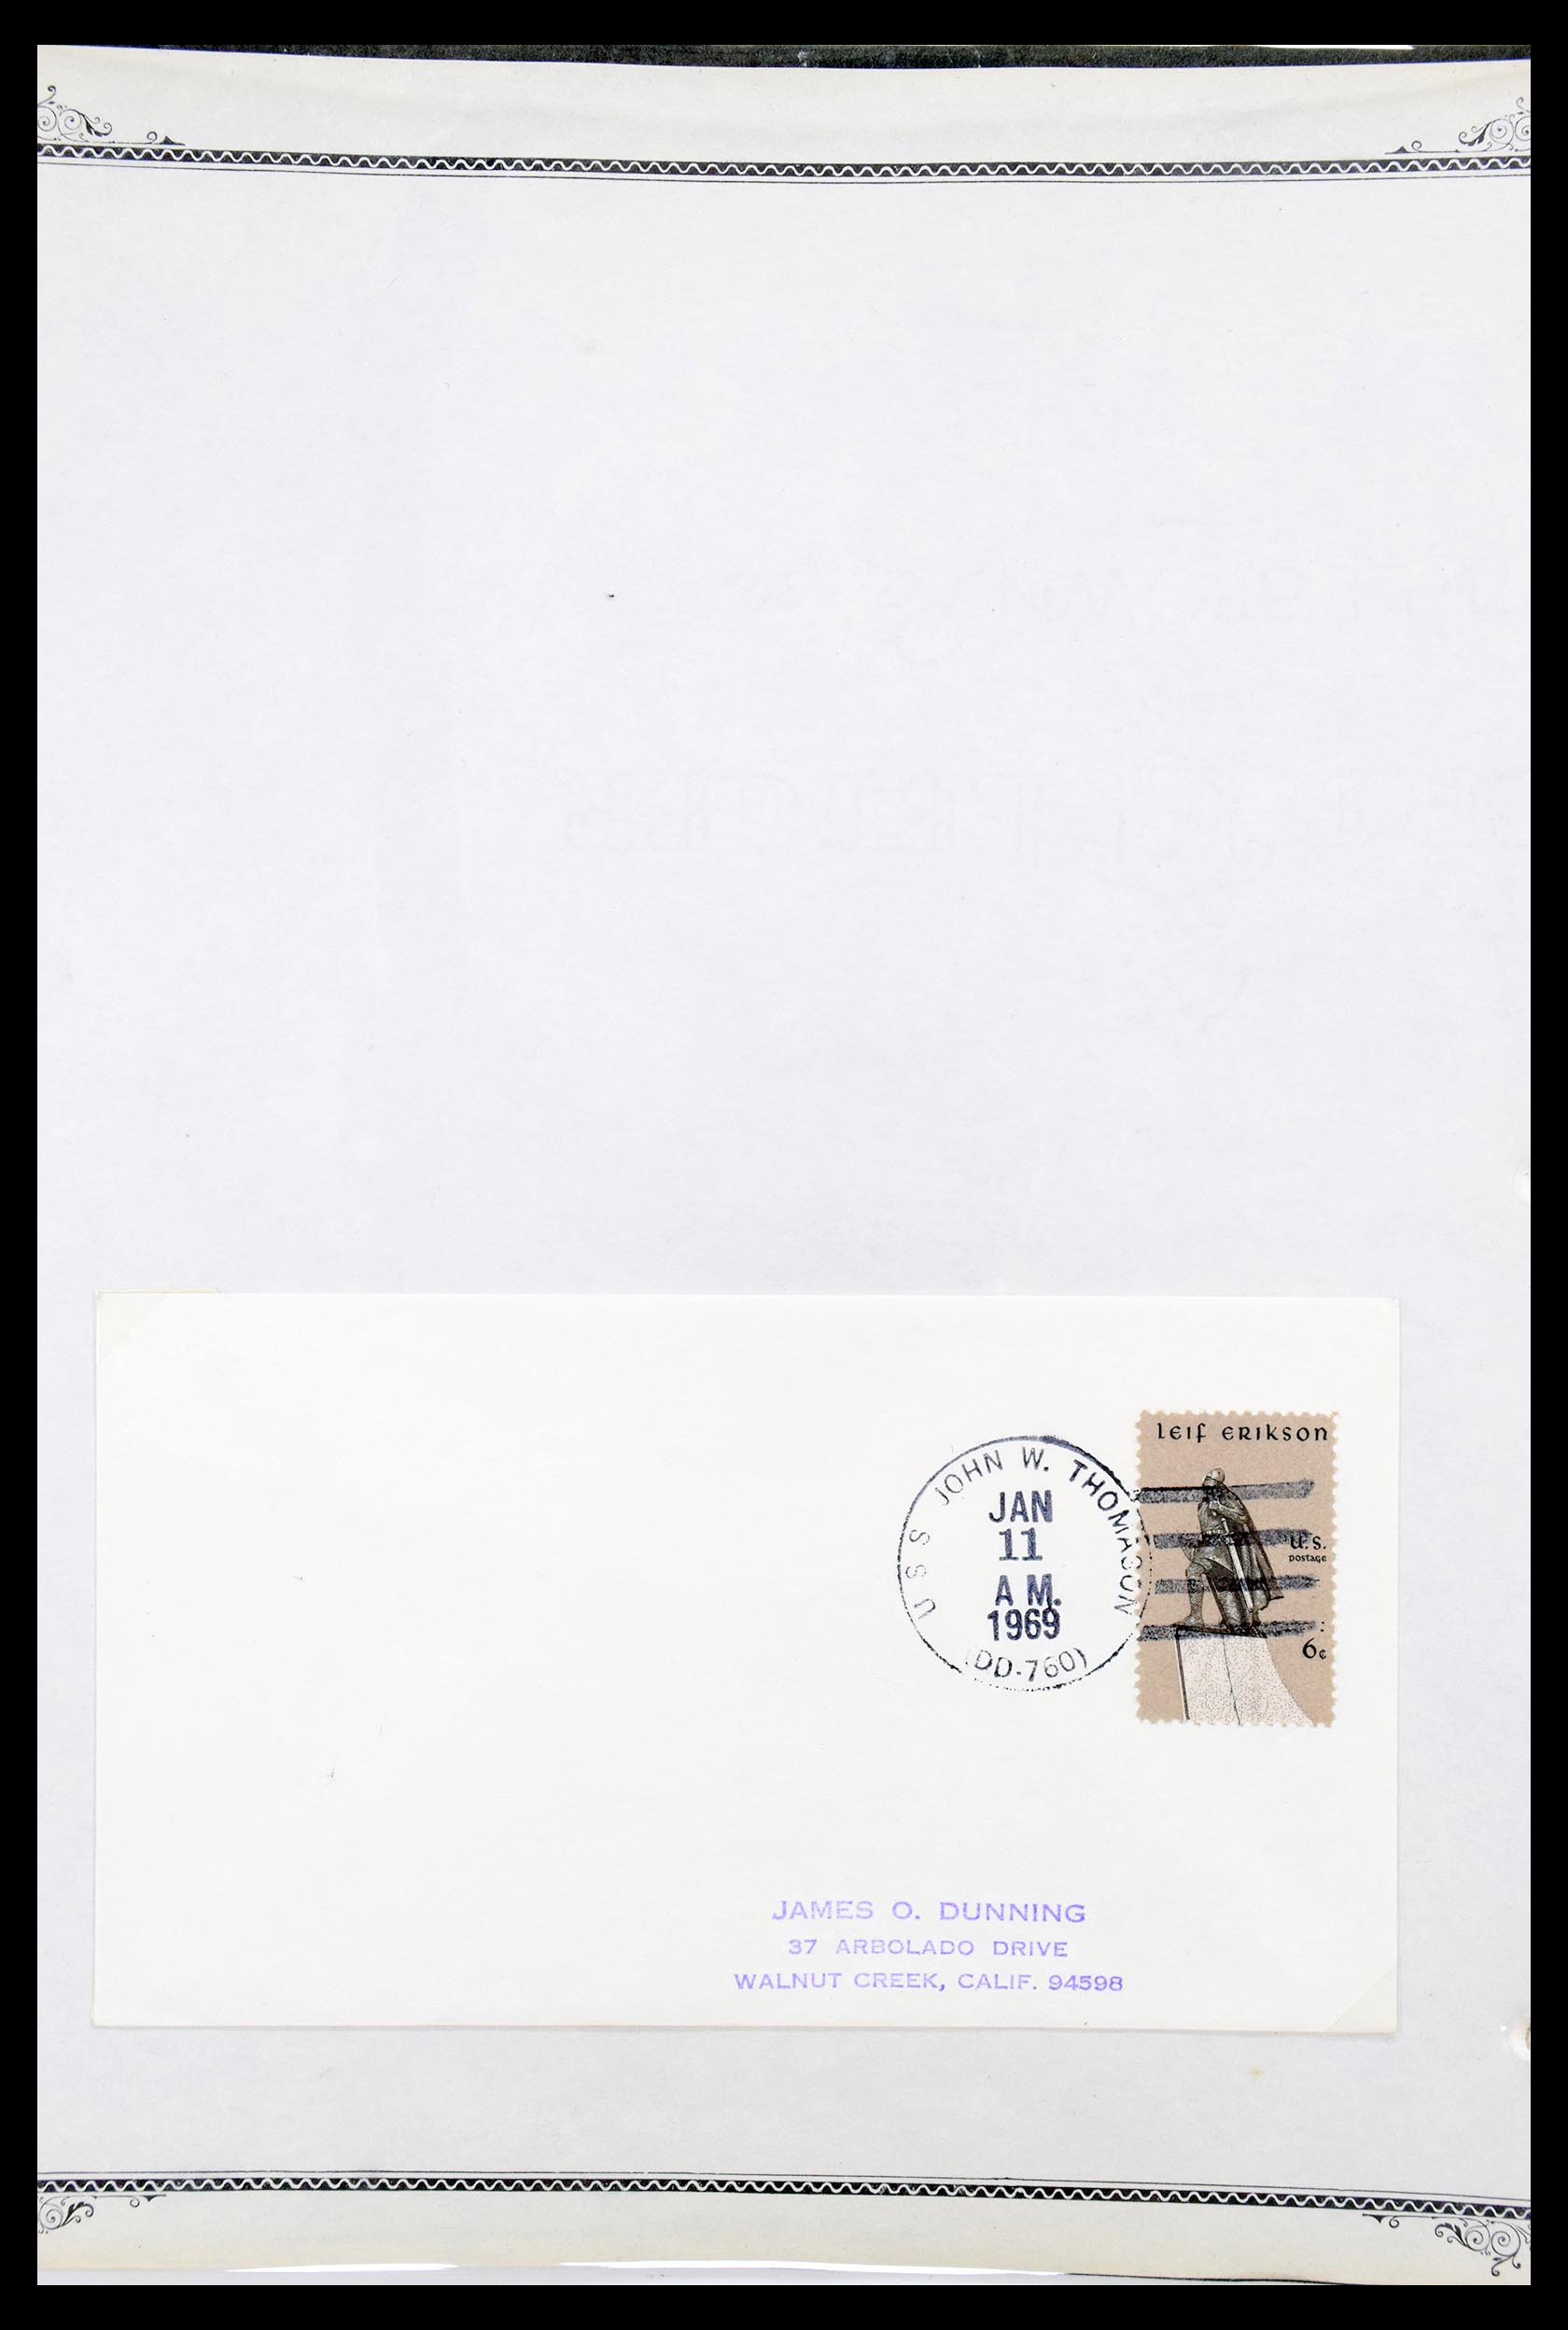 30341 036 - 30341 USA scheepspost brieven 1930-1970.